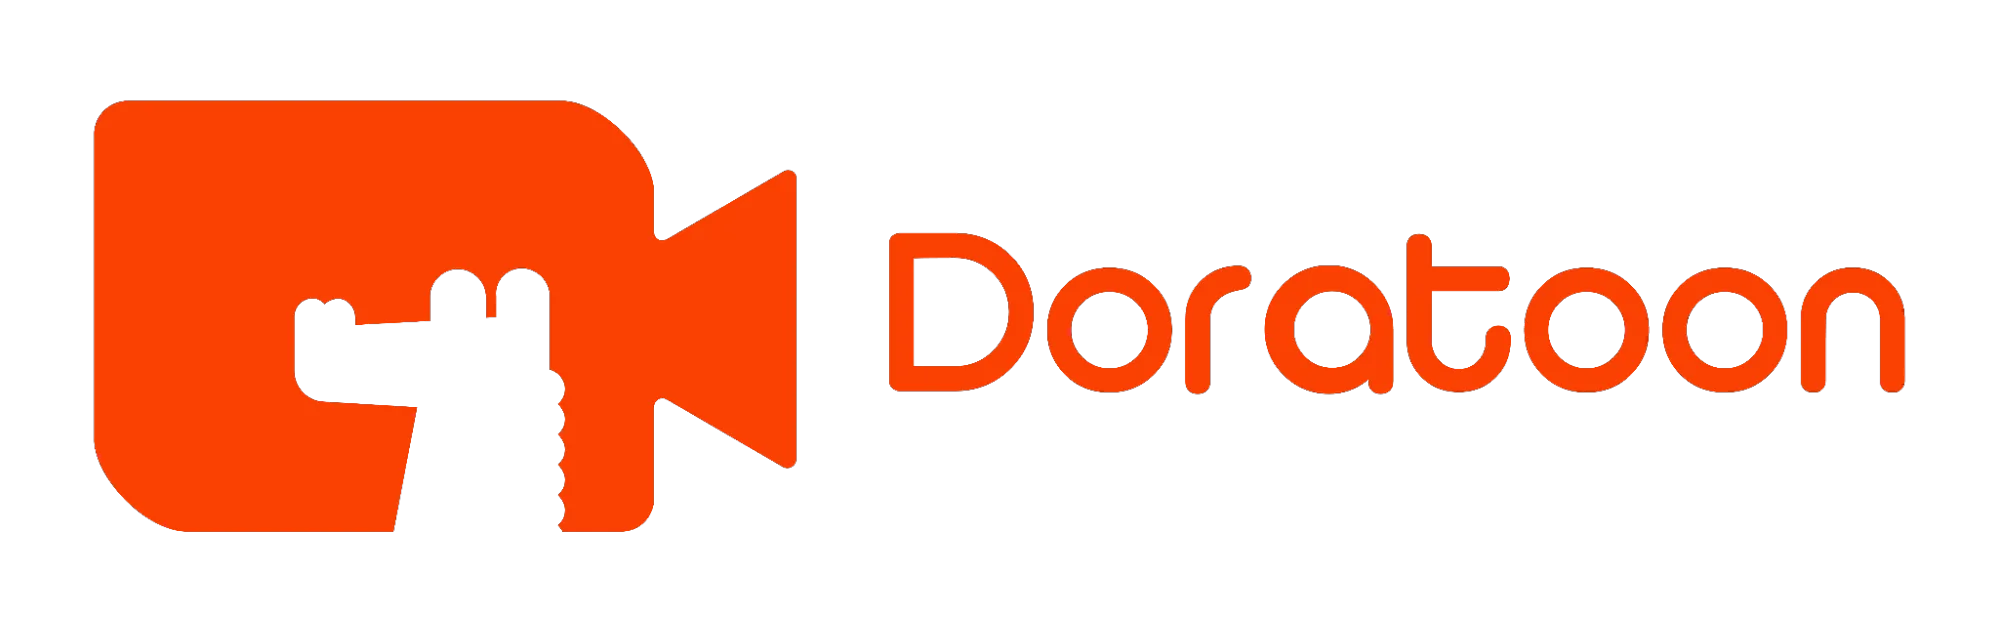 Doratoon